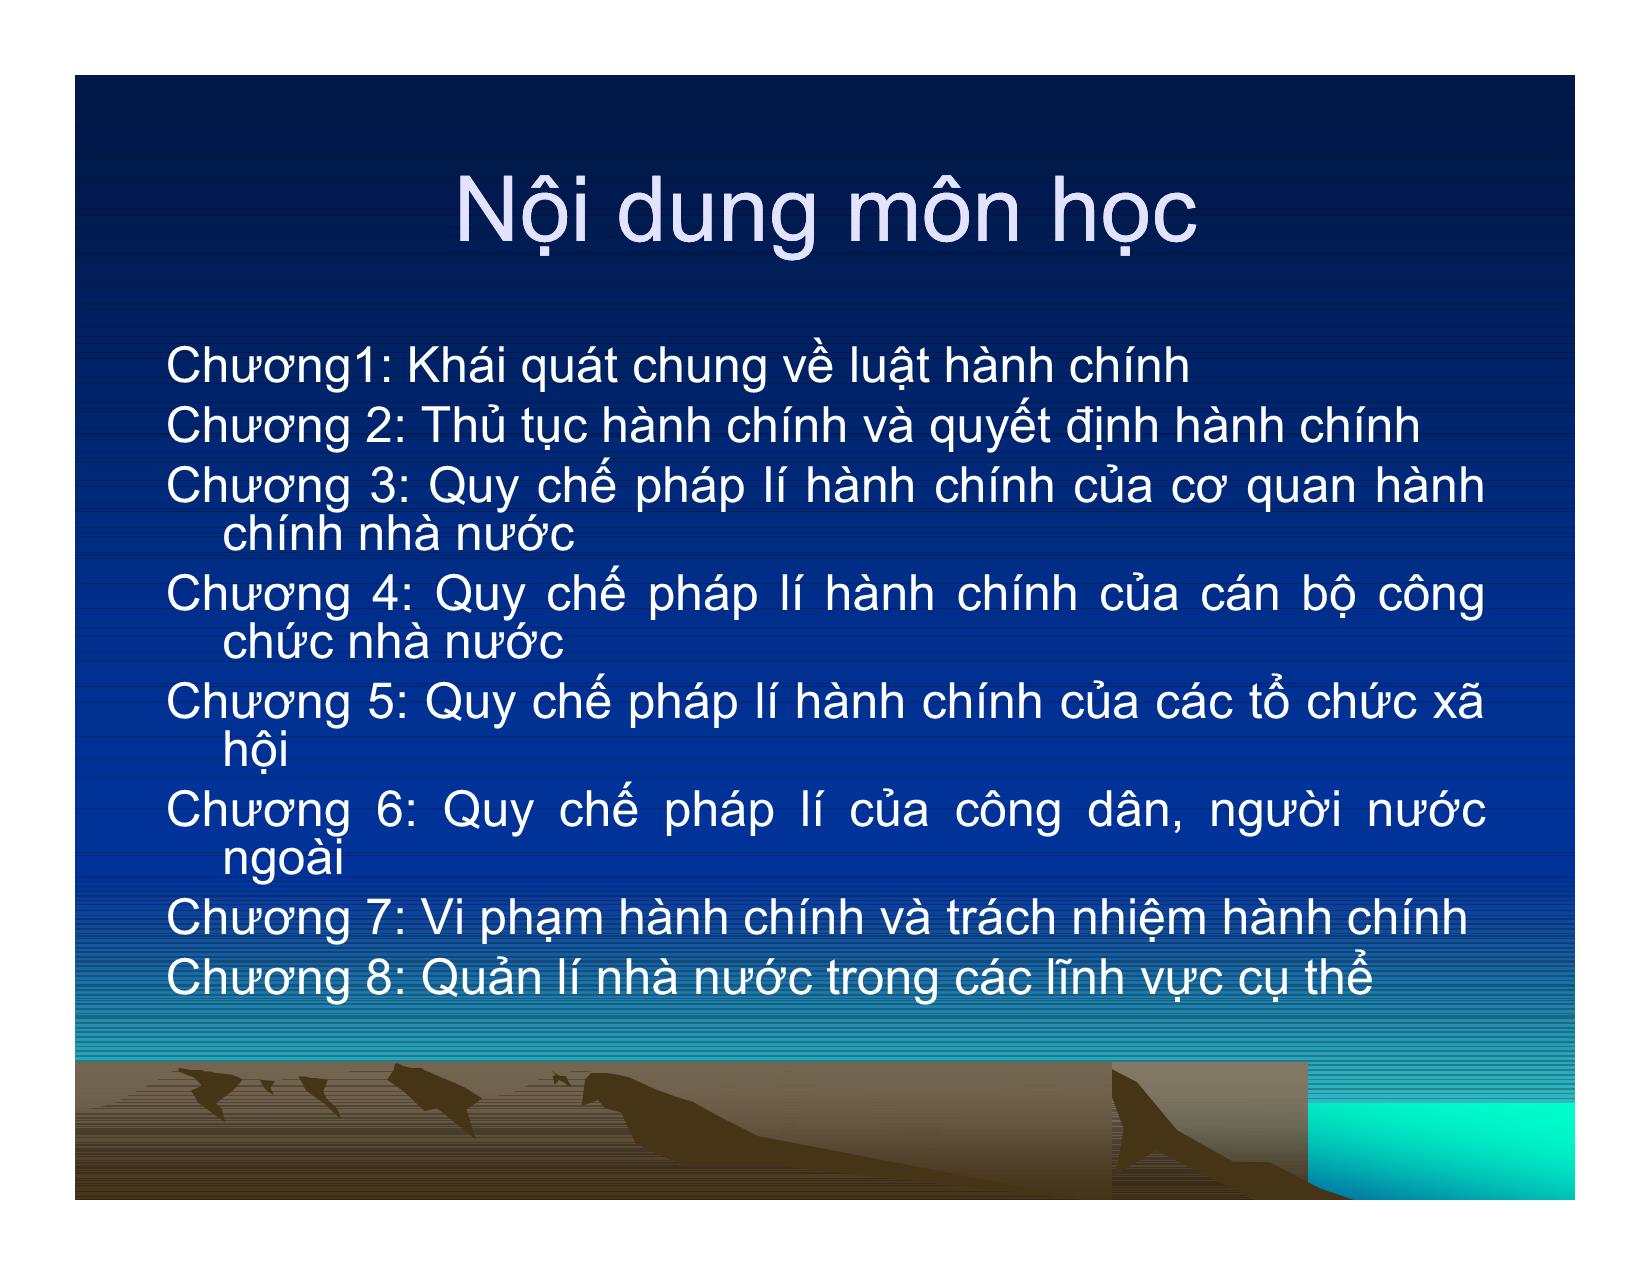 Bài giảng Luật hành chính Việt Nam trang 2